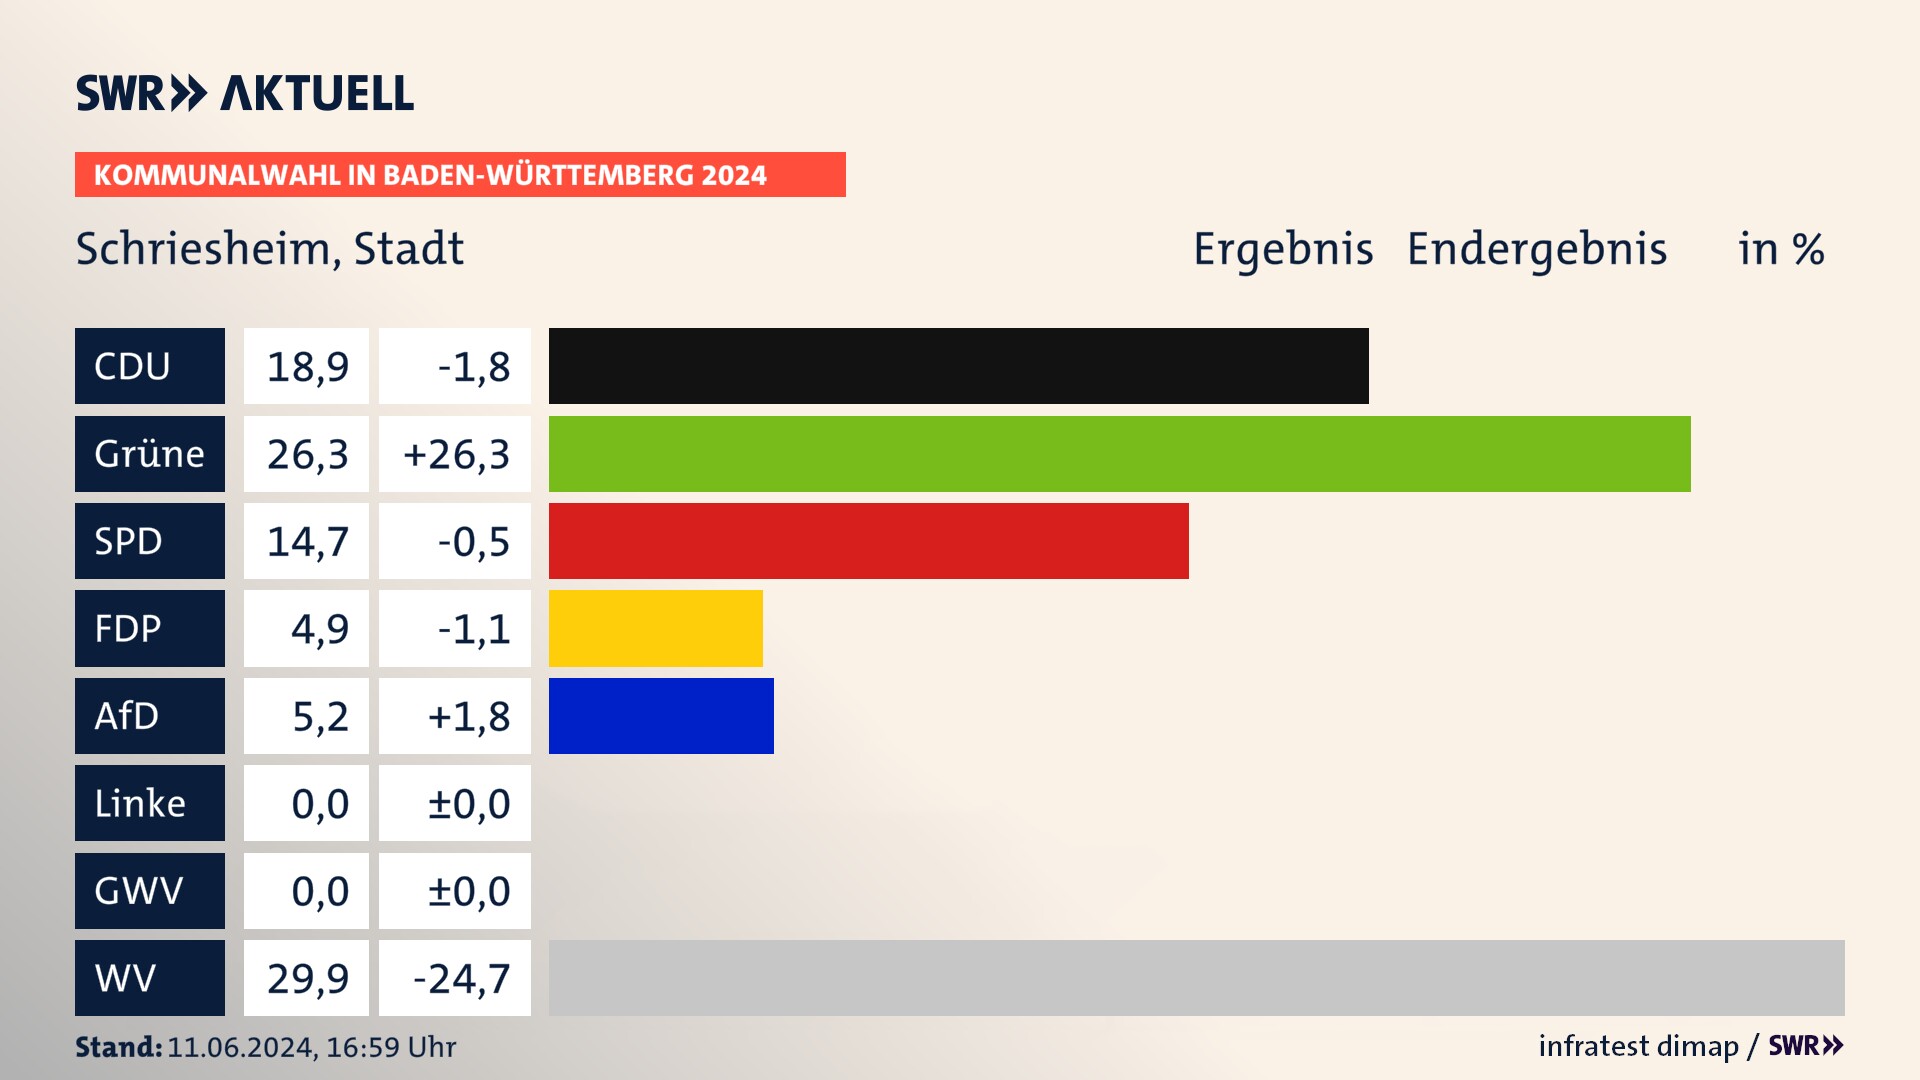 Kommunalwahl 2024 Endergebnis Zweitstimme für Schriesheim. In Schriesheim, Stadt erzielt die CDU 18,9 Prozent der gültigen  Stimmen. Die Grünen landen bei 26,3 Prozent. Die SPD erreicht 14,7 Prozent. Die FDP kommt auf 4,9 Prozent. Die AfD landet bei 5,2 Prozent. Die Wählervereinigungen erreichen 29,9 Prozent.